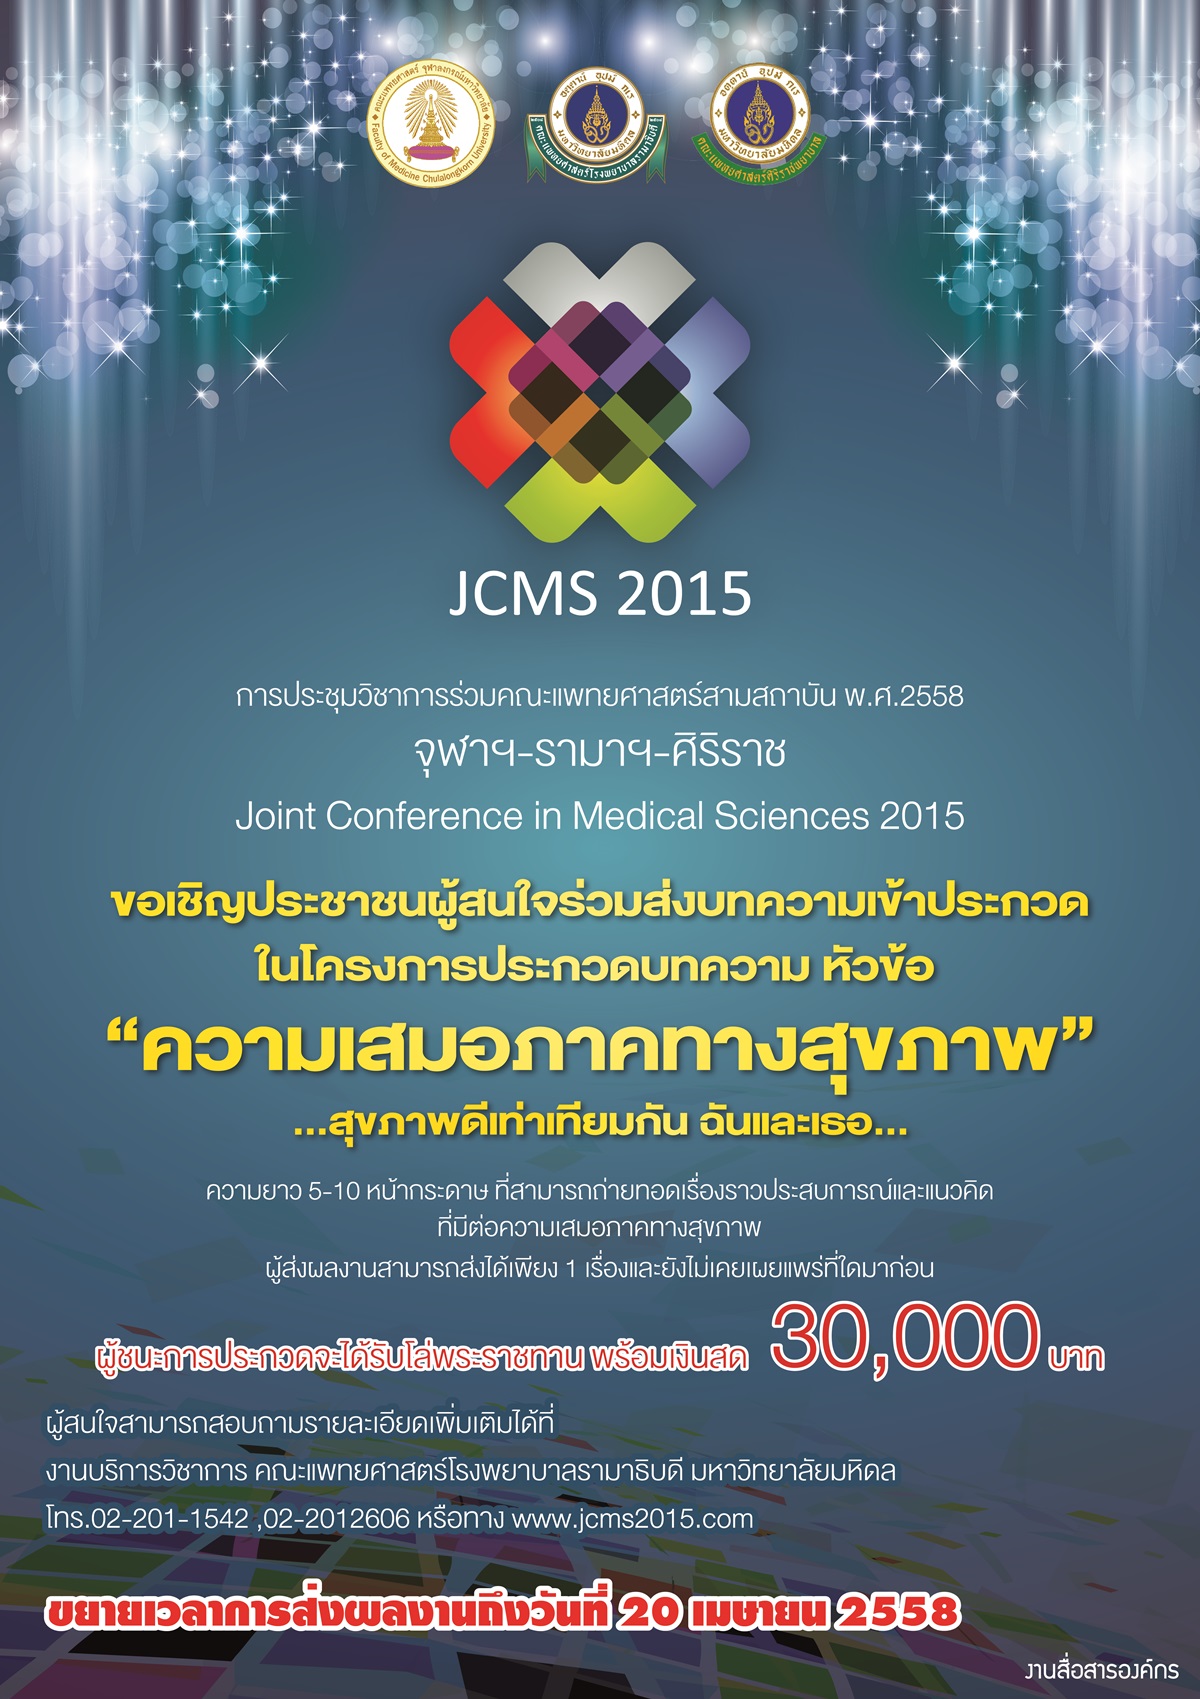 ขยายวันที่รับผลงานบทความ JCMS2015 ภาคประชาชน